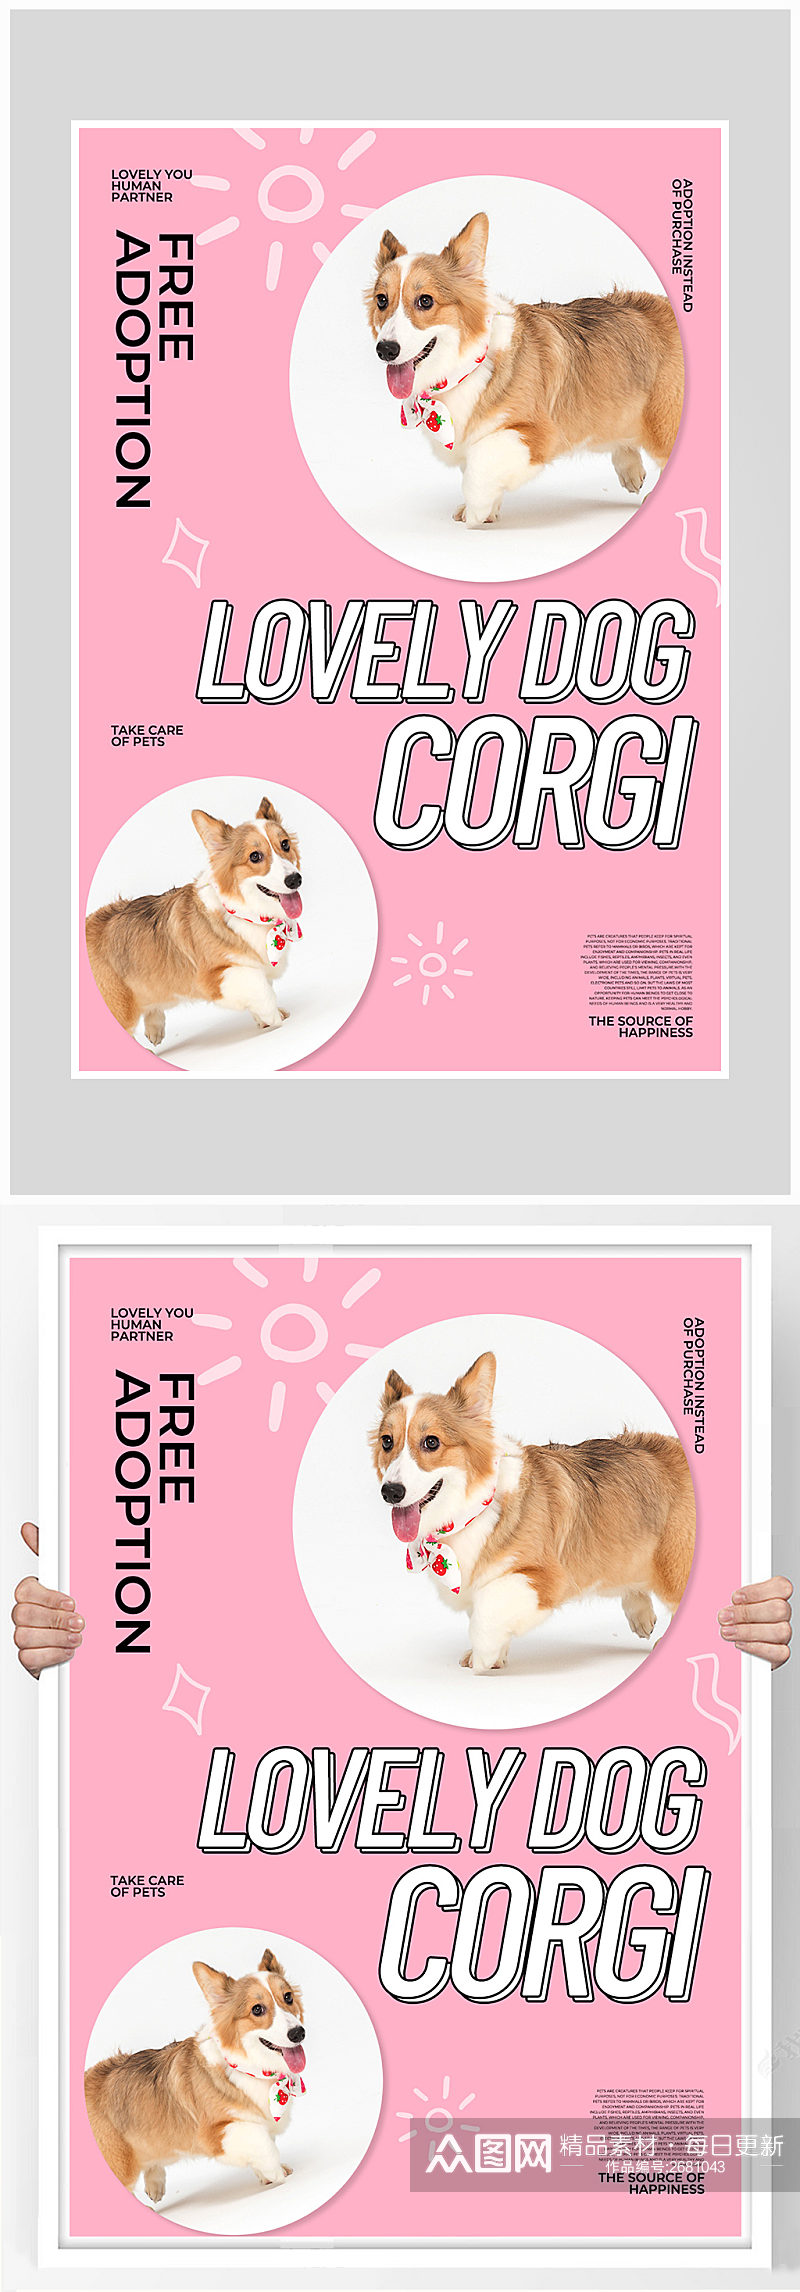 粉色简约宠物店小狗打折海报设计素材